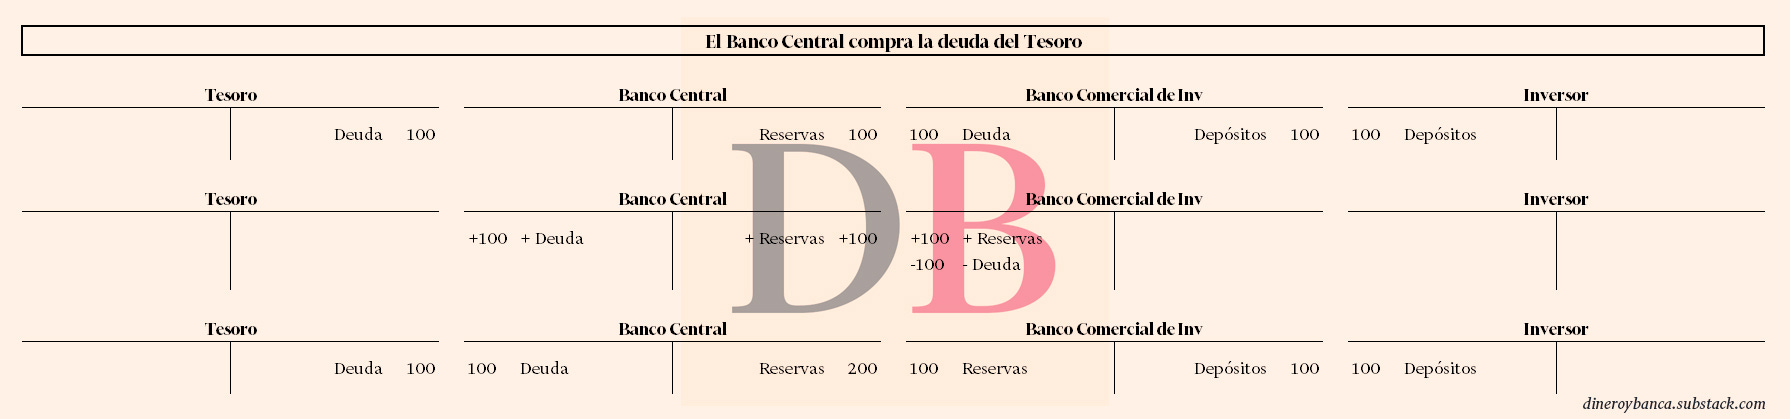 Movimientos en los balances de los agentes cuando el banco central compra la deuda pública del tesoro